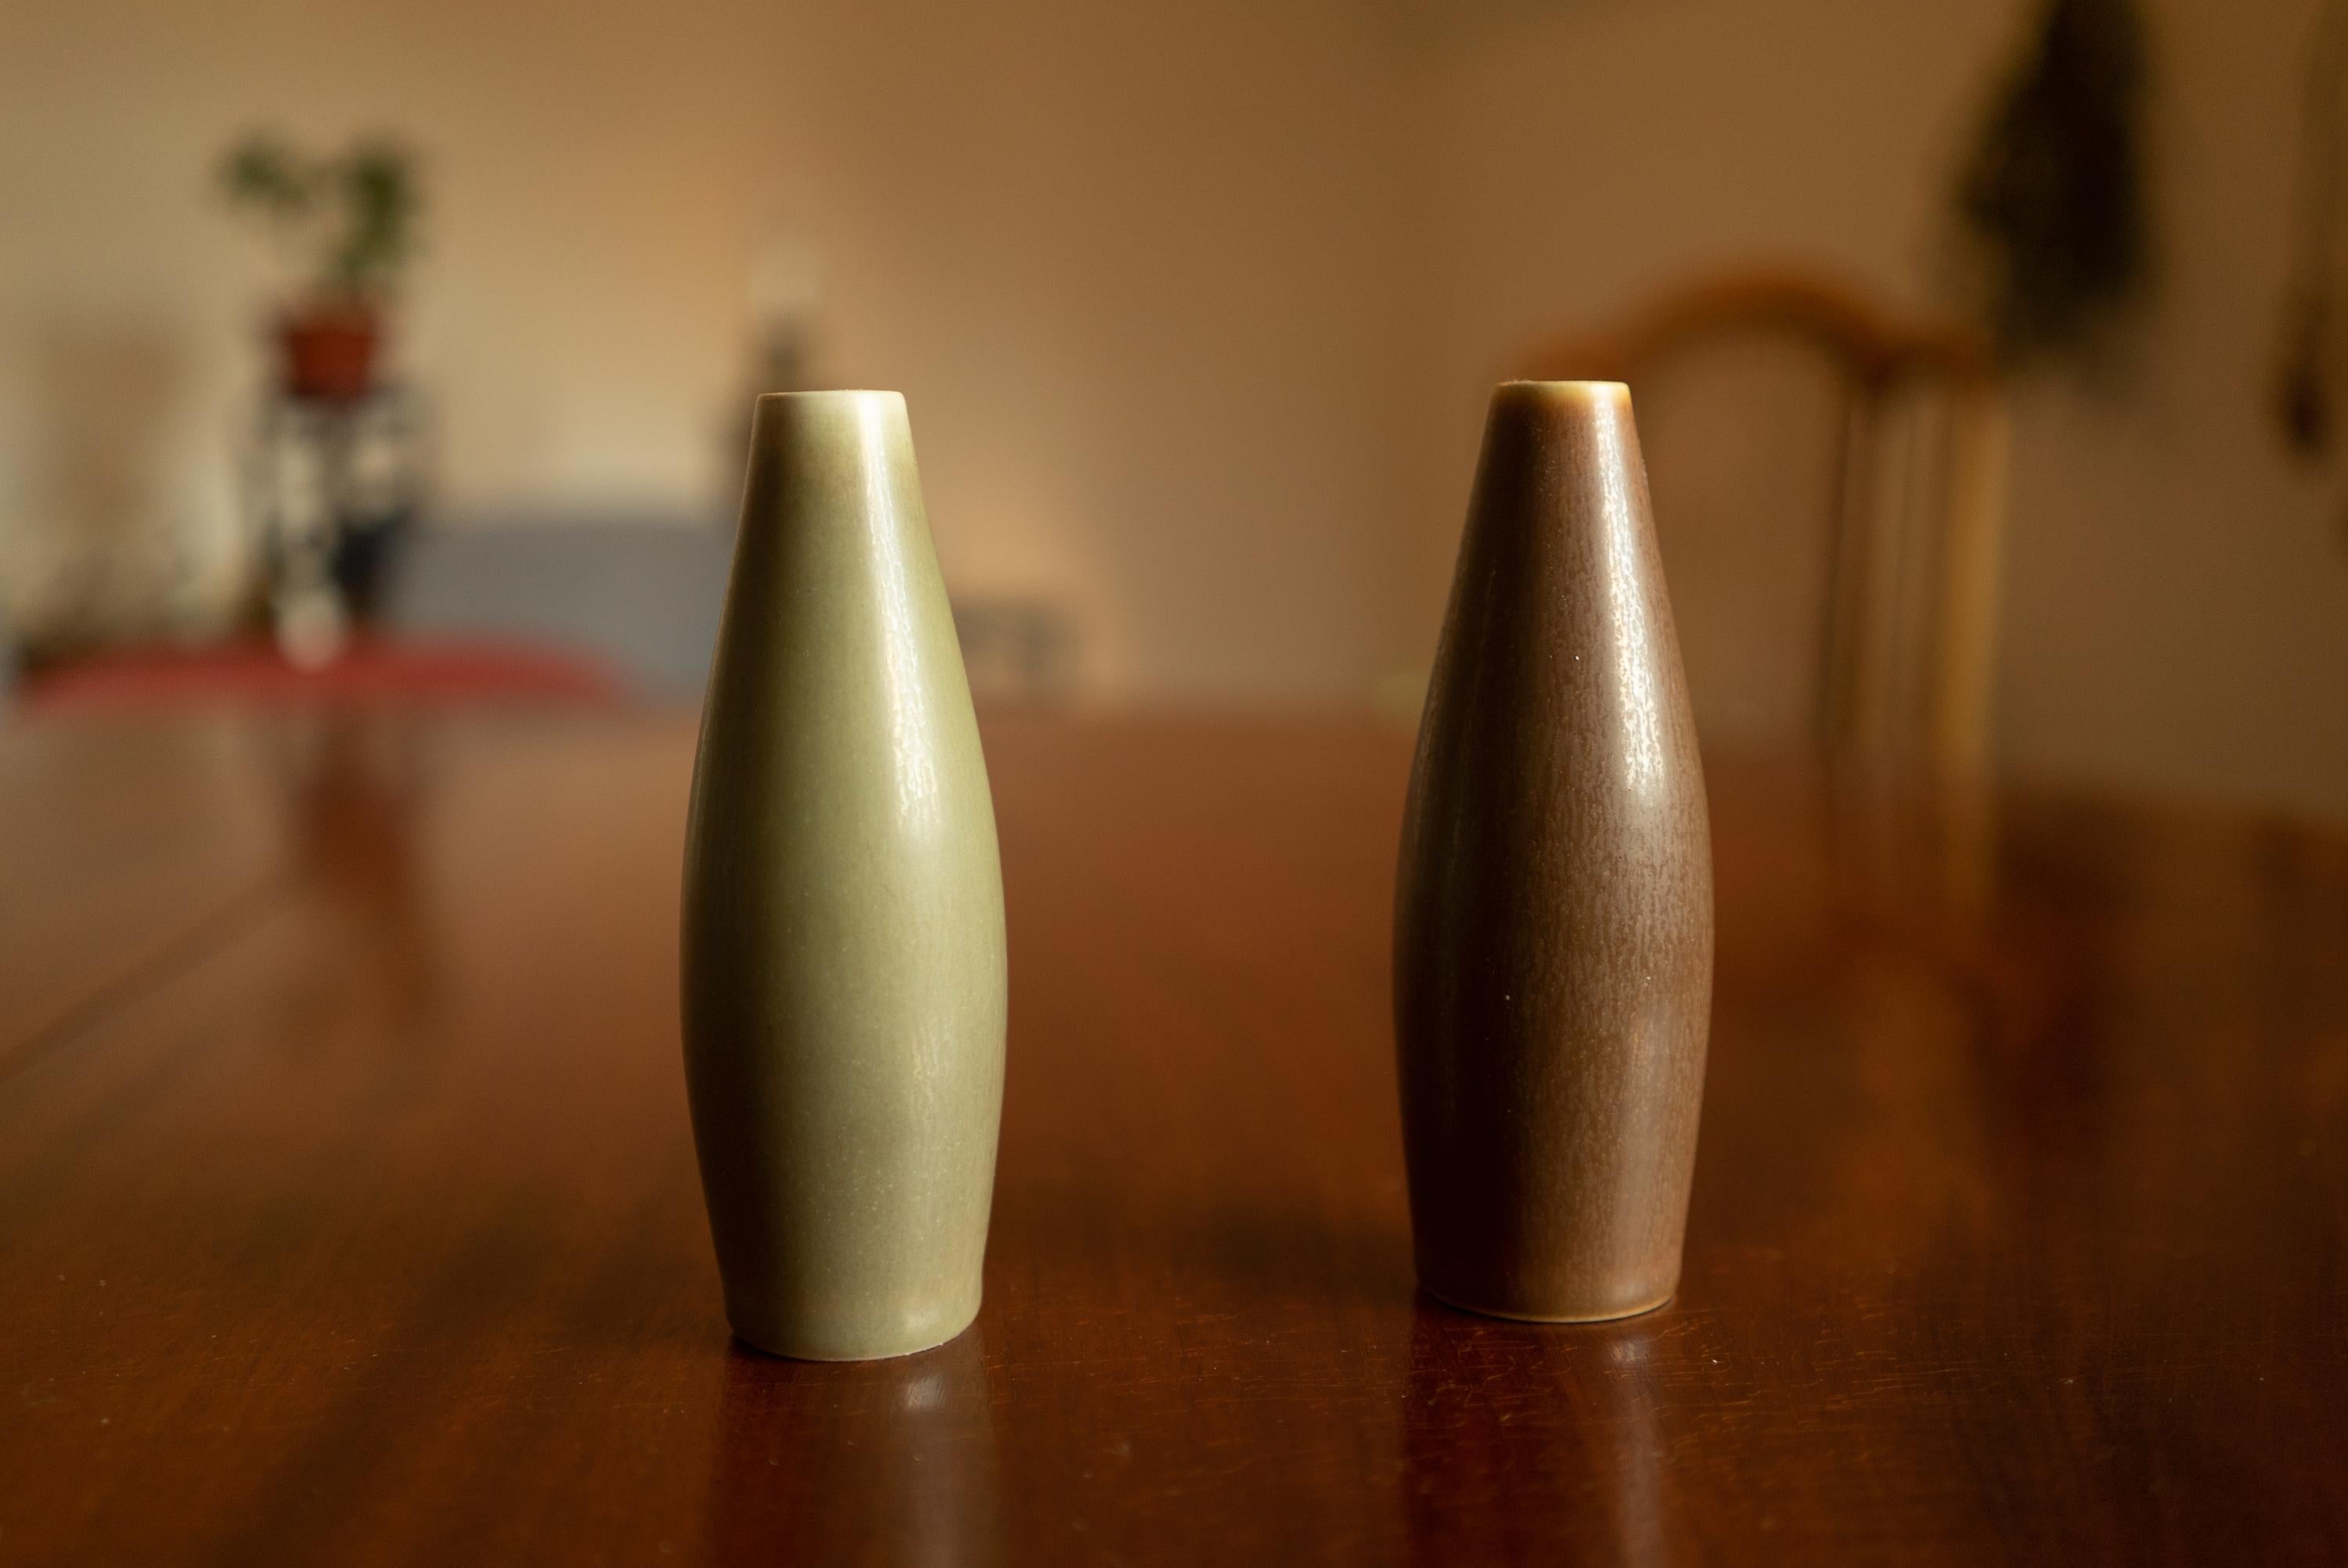 Paire de vases danois en céramique du milieu du siècle par Palshus, années 1960
Grand vase moderne danois Palshus en glaçure HaresFur de couleur terre. Un exemple parfait du minimalisme moderne danois. Conçu par Per Linnemann-Schmidt pour Palshus